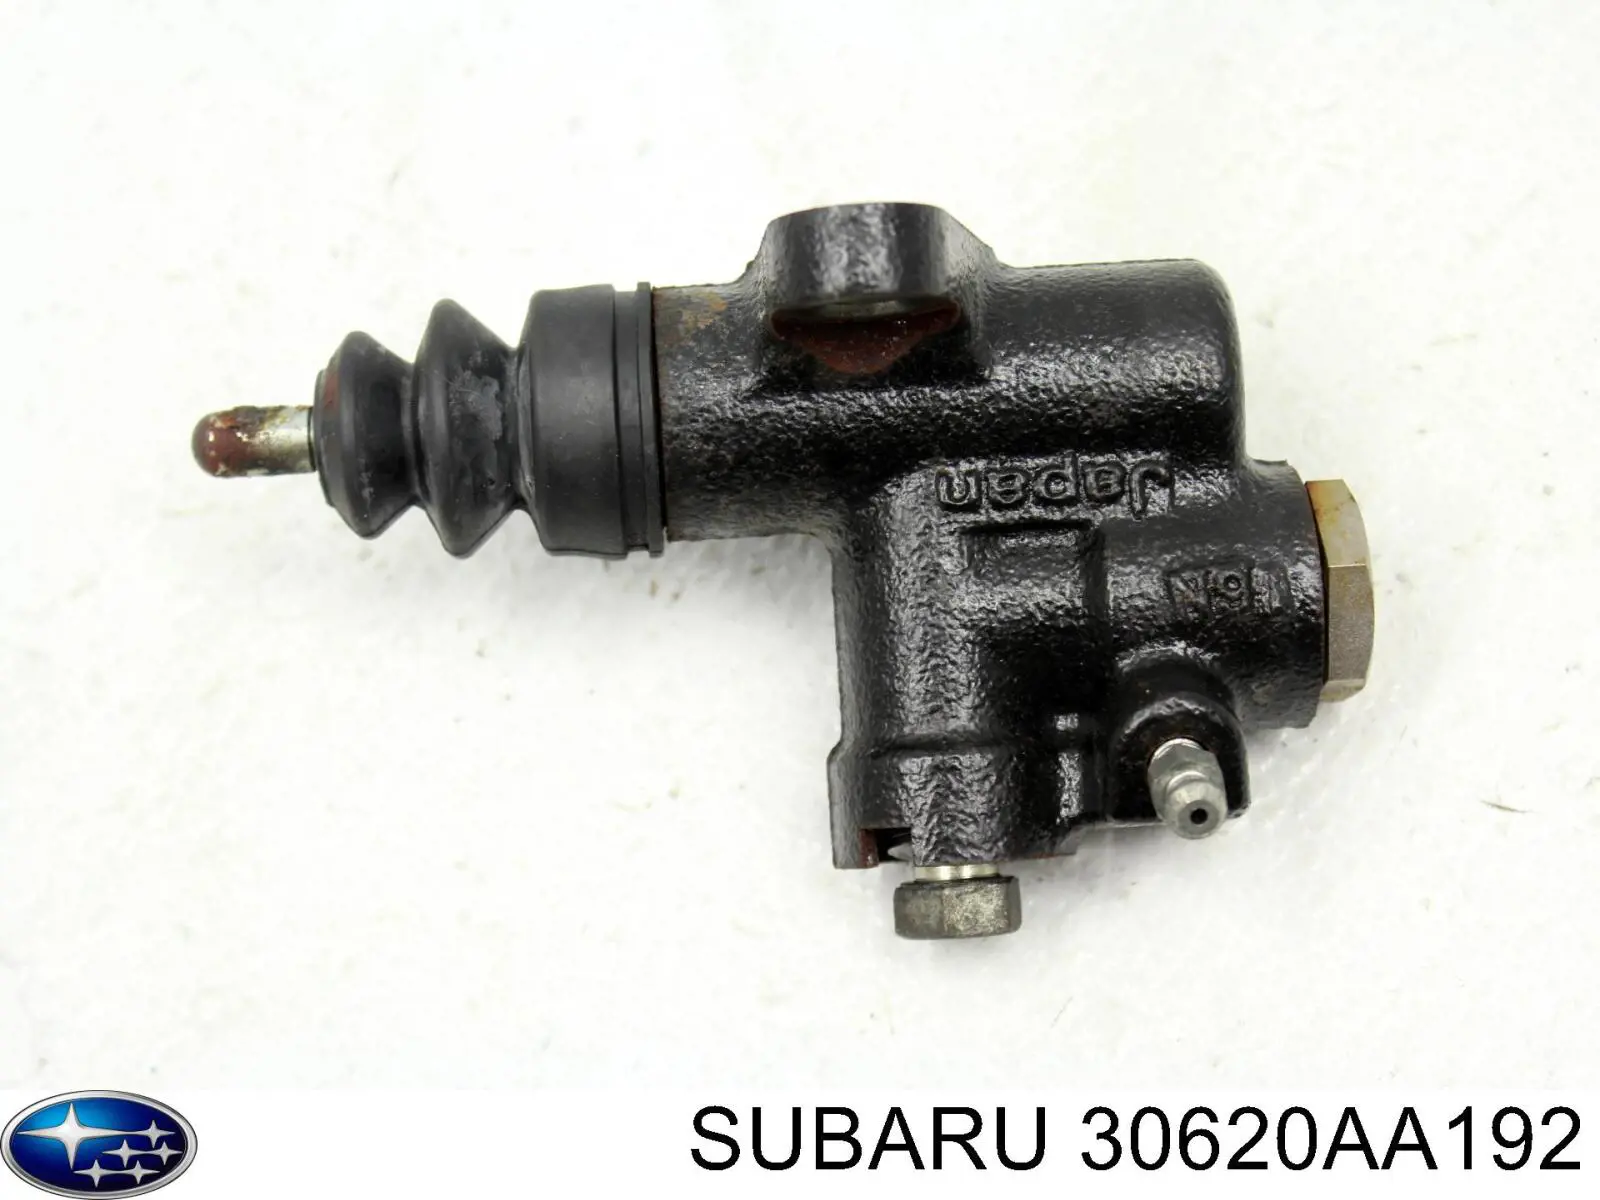 30620AA192 Subaru цилиндр сцепления рабочий